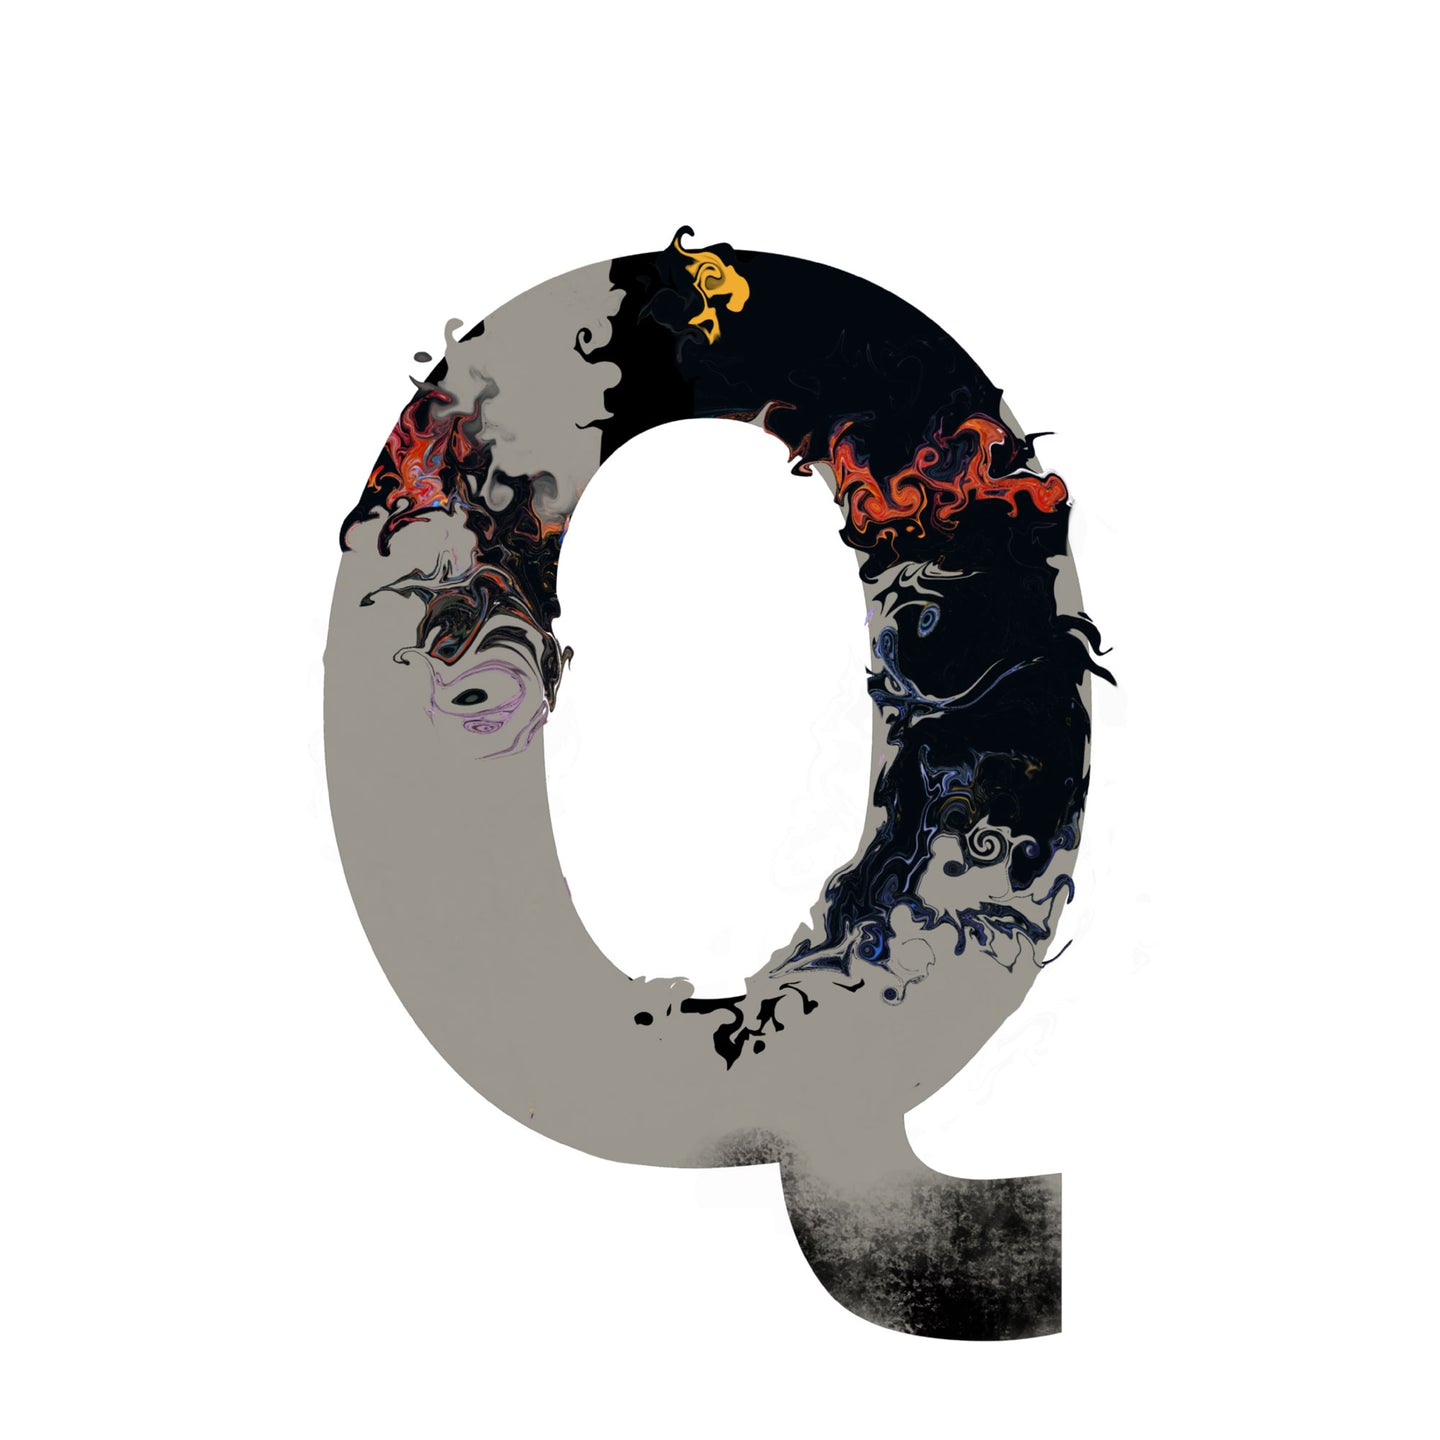 'WILD Q' From the Wild Alphabet.